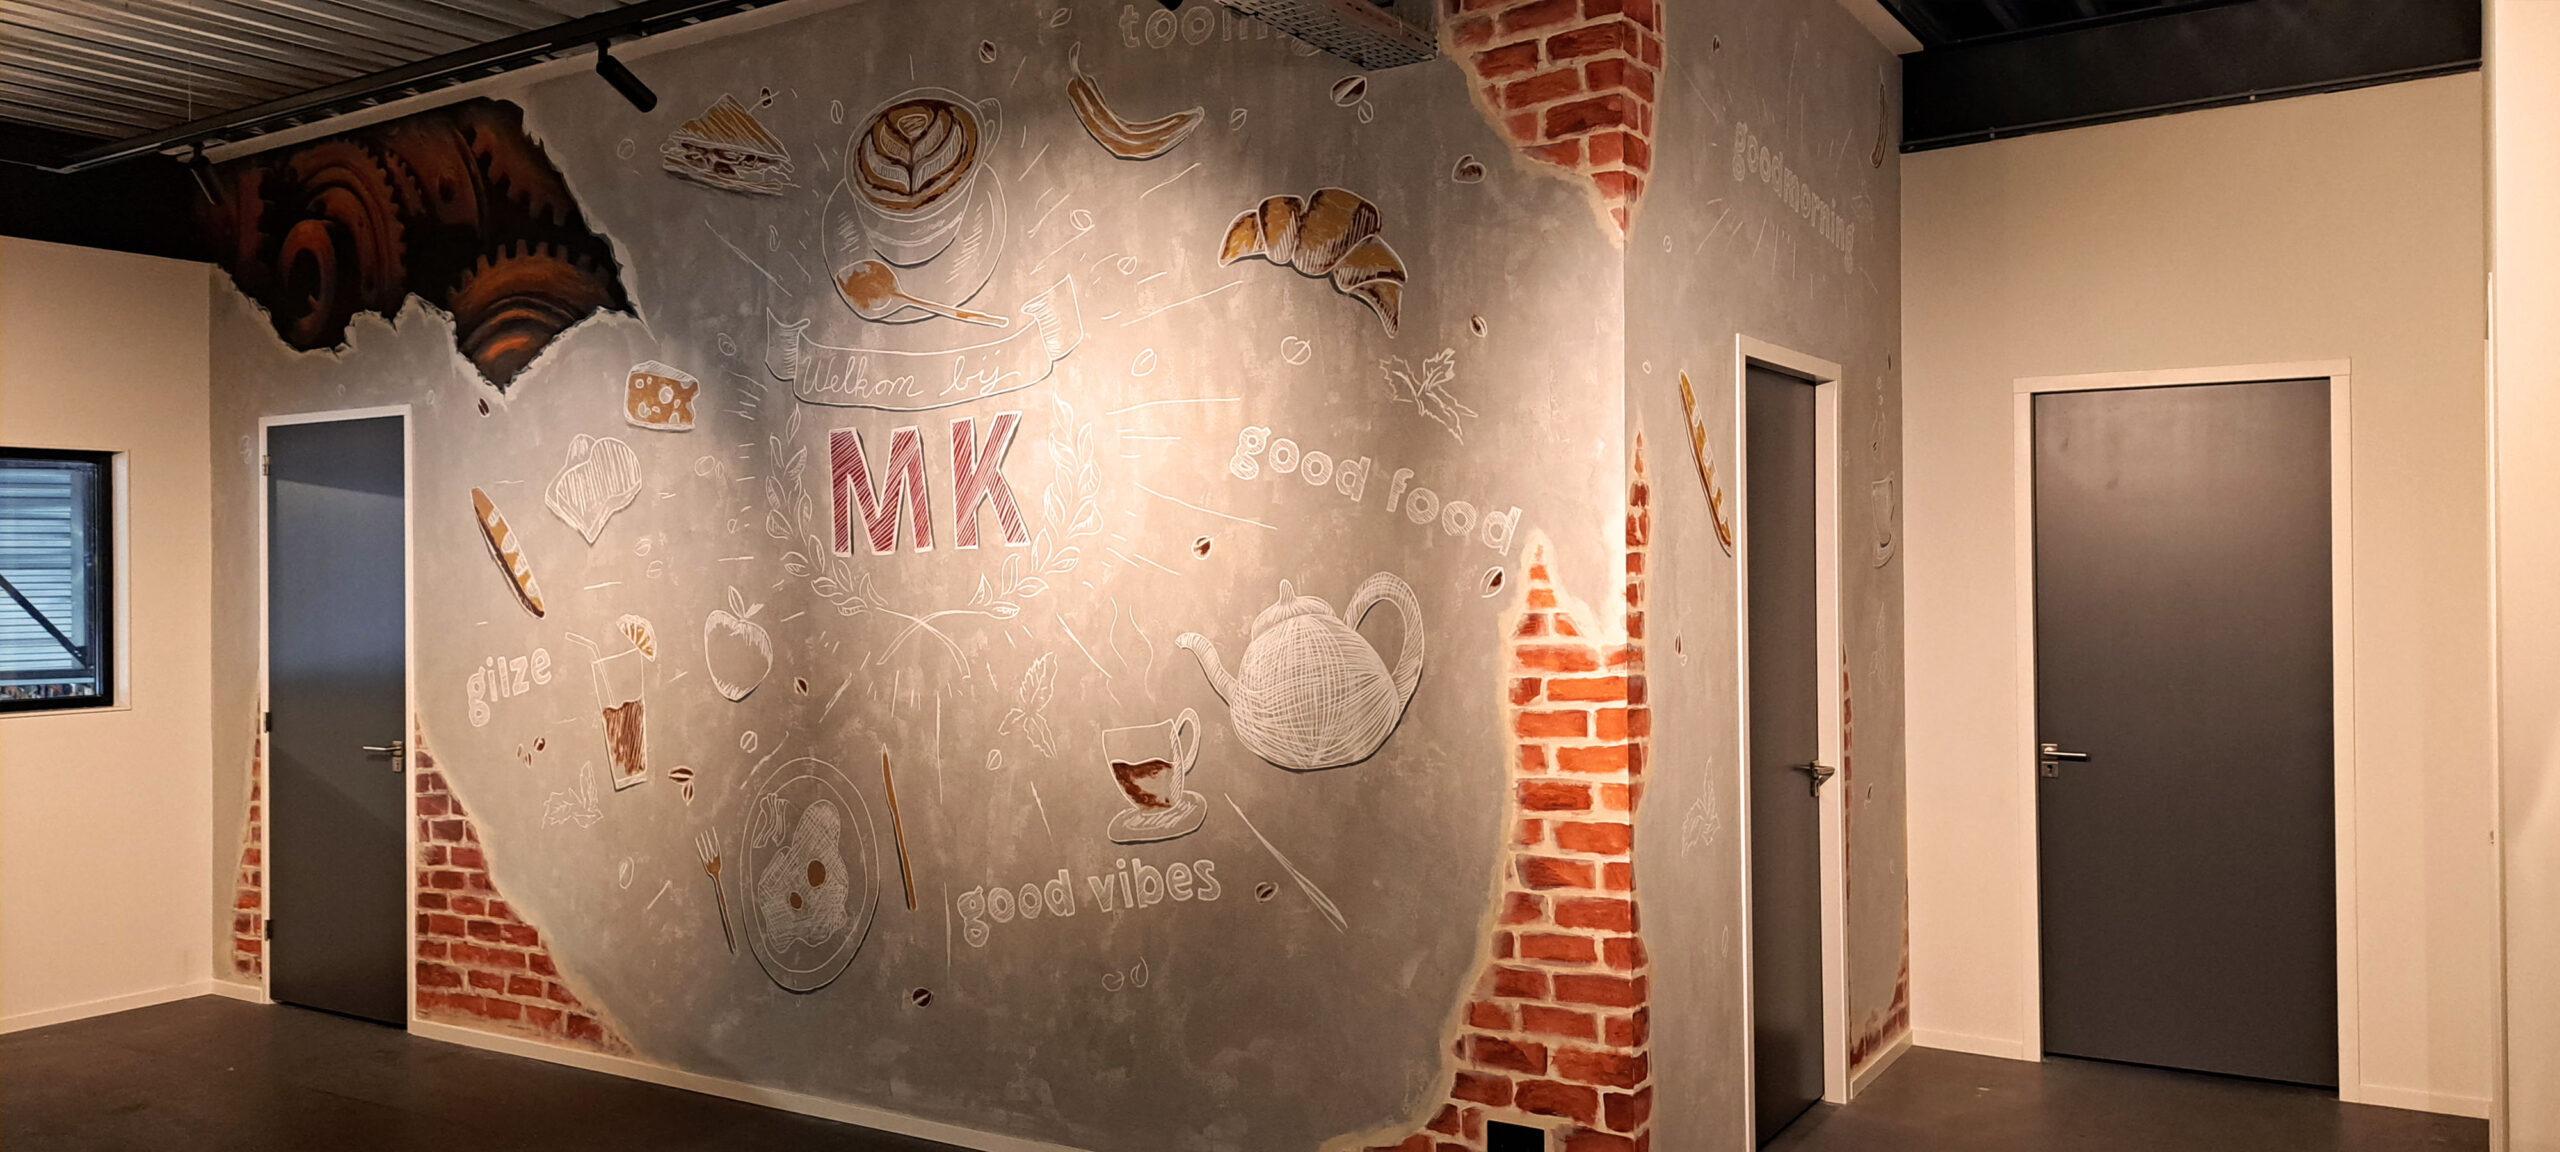 Kantine muurschildering bij MK Gilze gezien vanuit een hoek